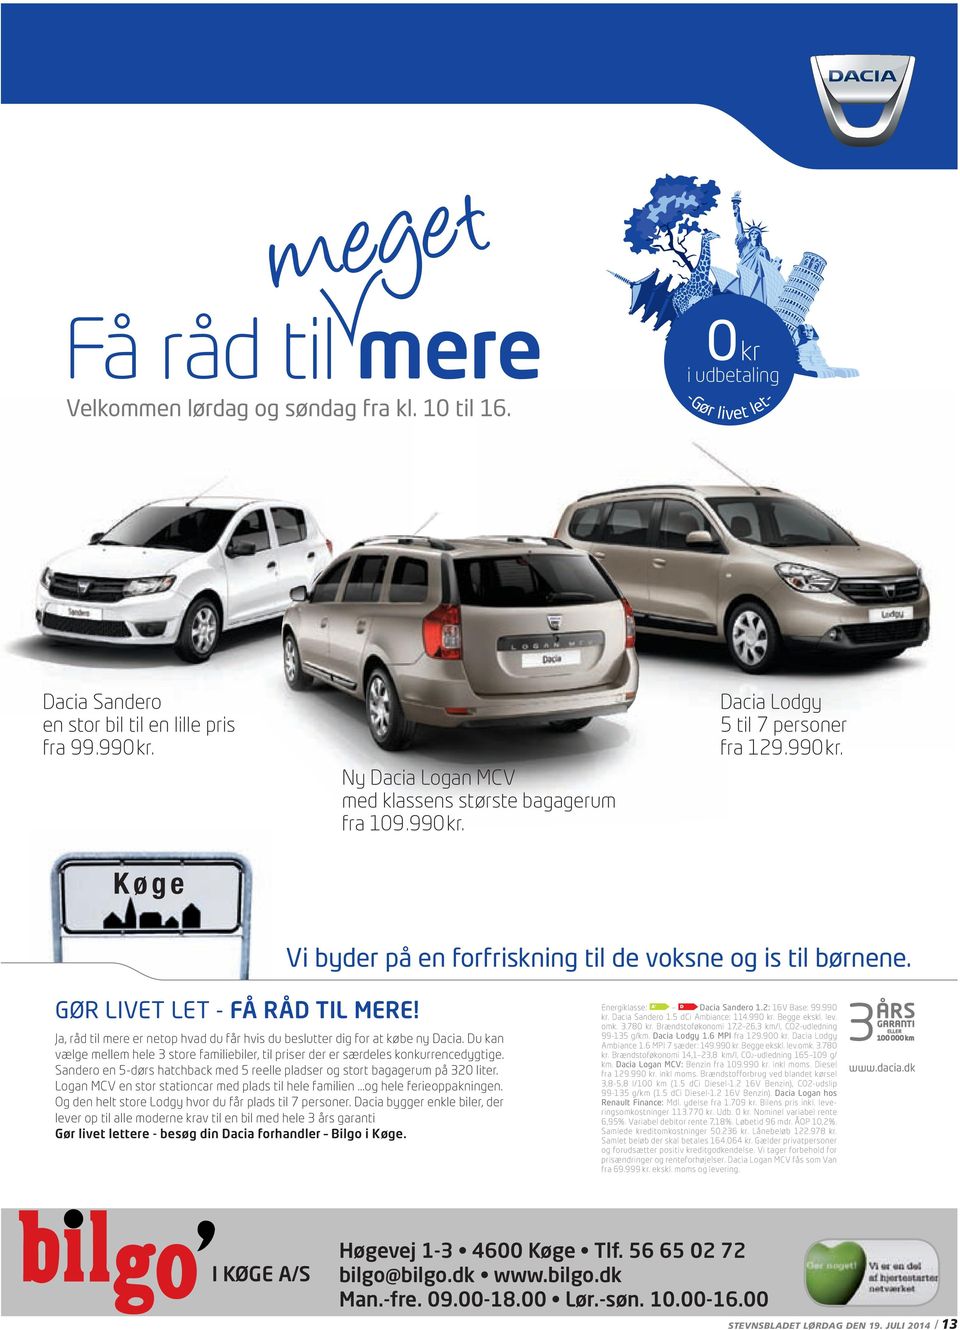 GØR LIVET LET - FÅ RÅD TIL MERE! Ja, råd til mere er netop hvad du får hvis du beslutter dig for at købe ny Dacia.